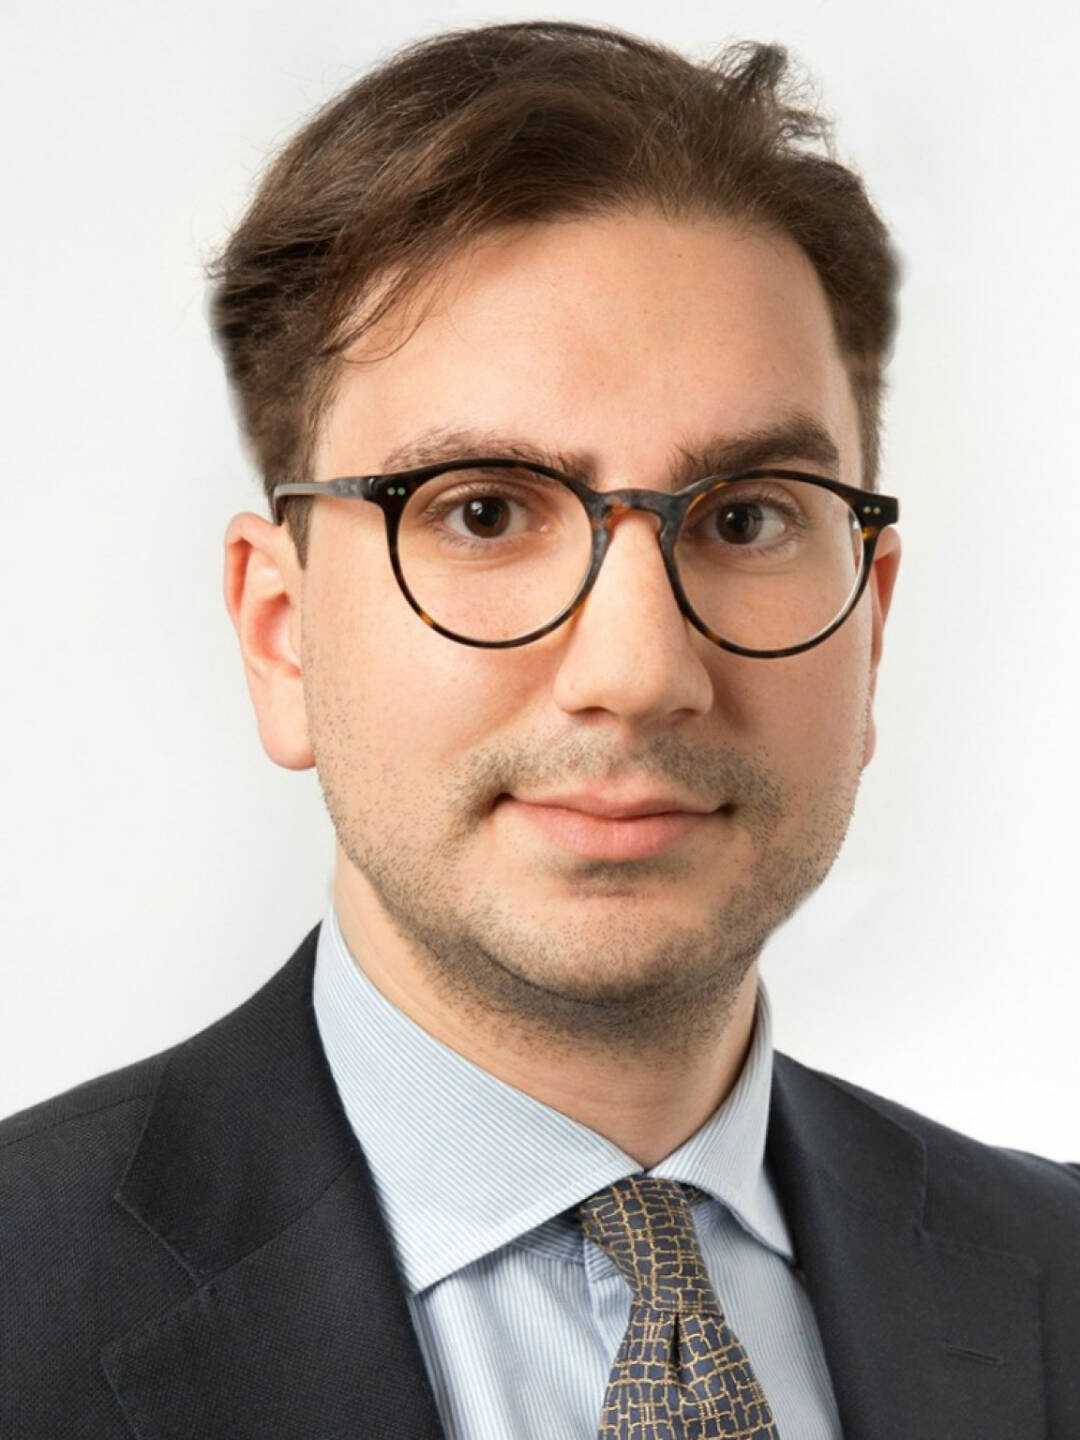 Rochel Sarikov verstärkt das Investment Properties Team von CBRE Österreich. Der 28jährige Wiener zeichnet für die Assetklasse Hotelimmobilien verantwortlich und berät Eigentümer, Entwickler und Investoren beim An- und Verkauf. Credit: CBRE